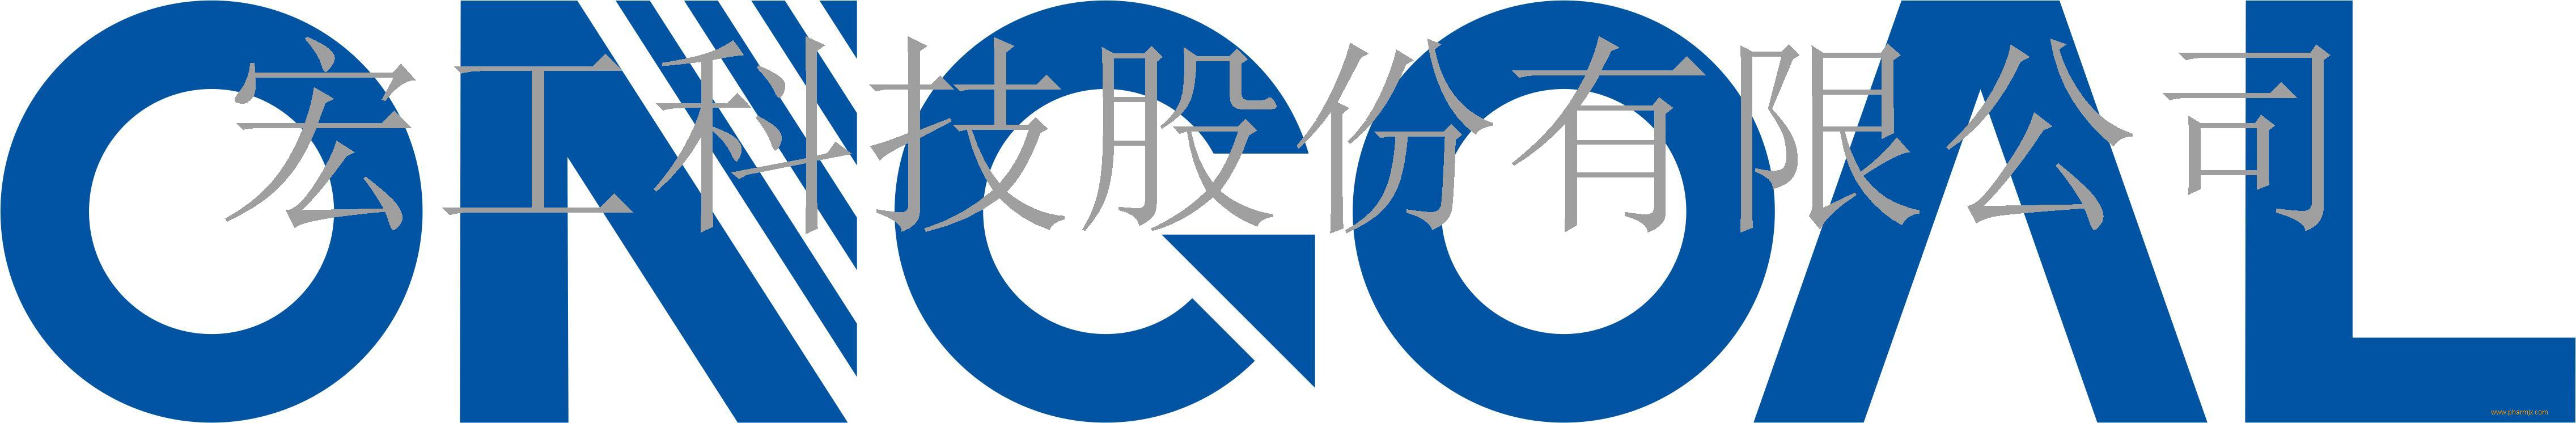 宏工科技股份有限公司 公司logo